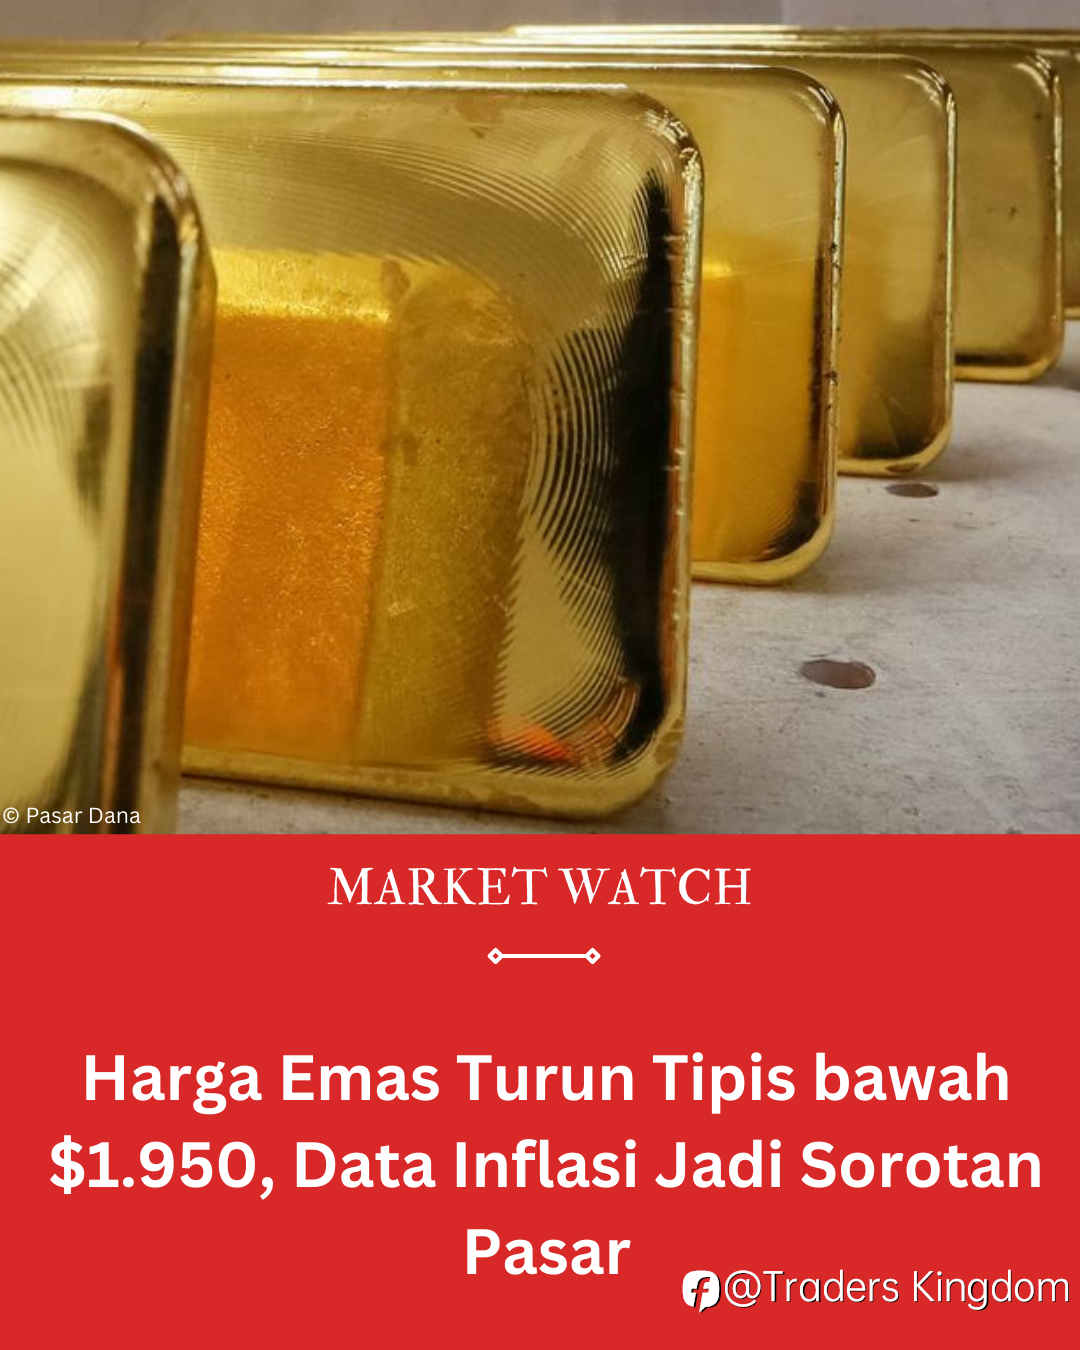 Harga Emas Turun Tipis bawah $1.950, Data Inflasi Jadi Sorotan Pasar